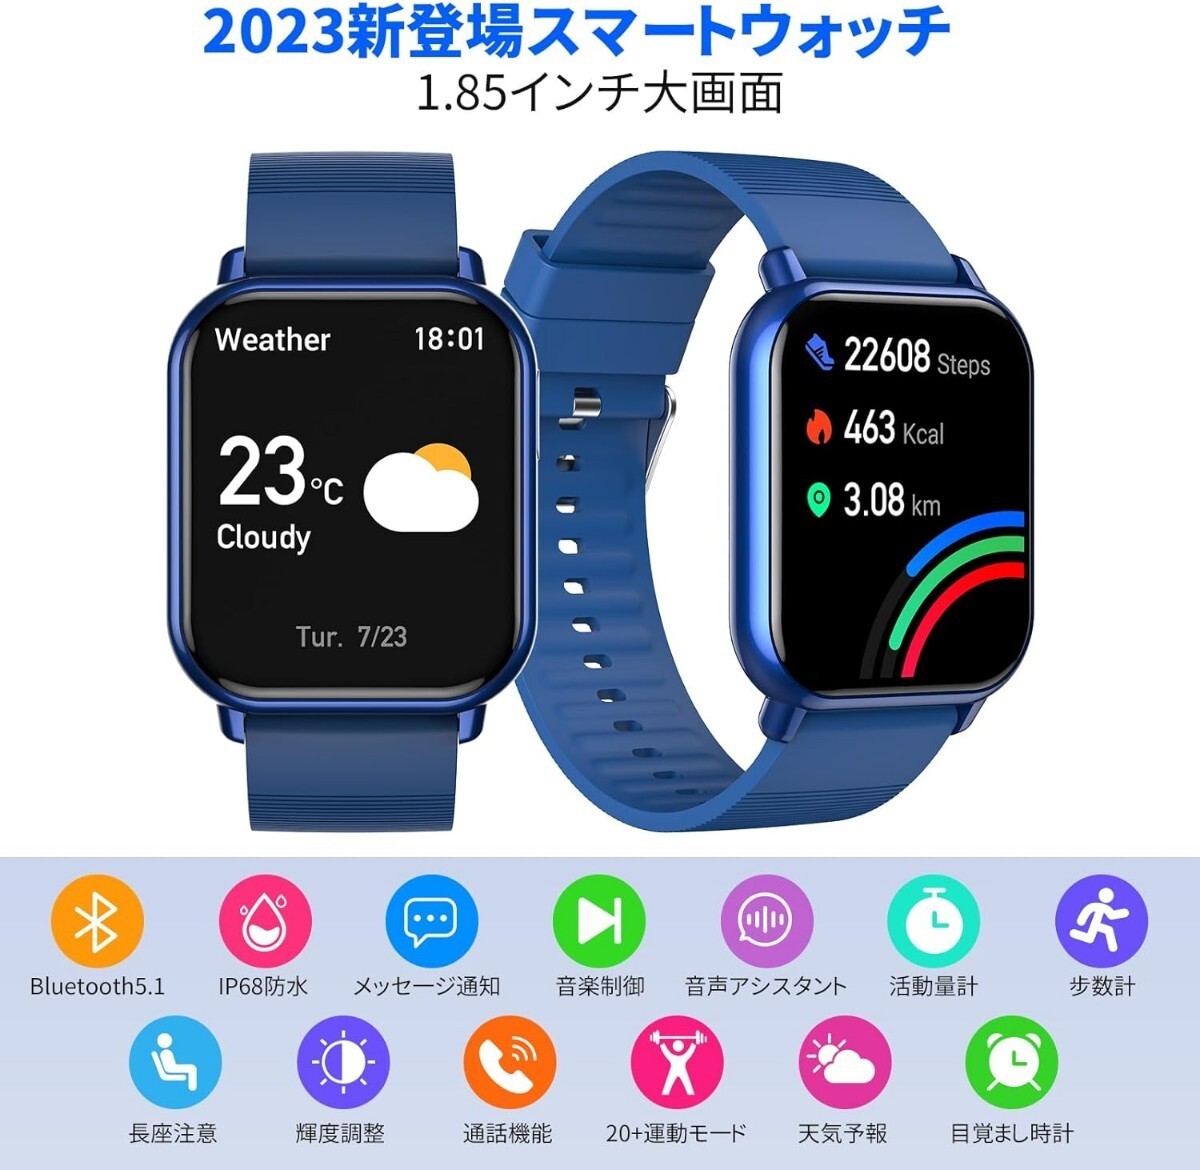 ◆新品 本体 スマートウォッチ 着信通知 ブルー 青 防水 1.85インチ大画面 腕時計 Bluetooth iPhone対応 Android対応 日本語説明書 _画像4